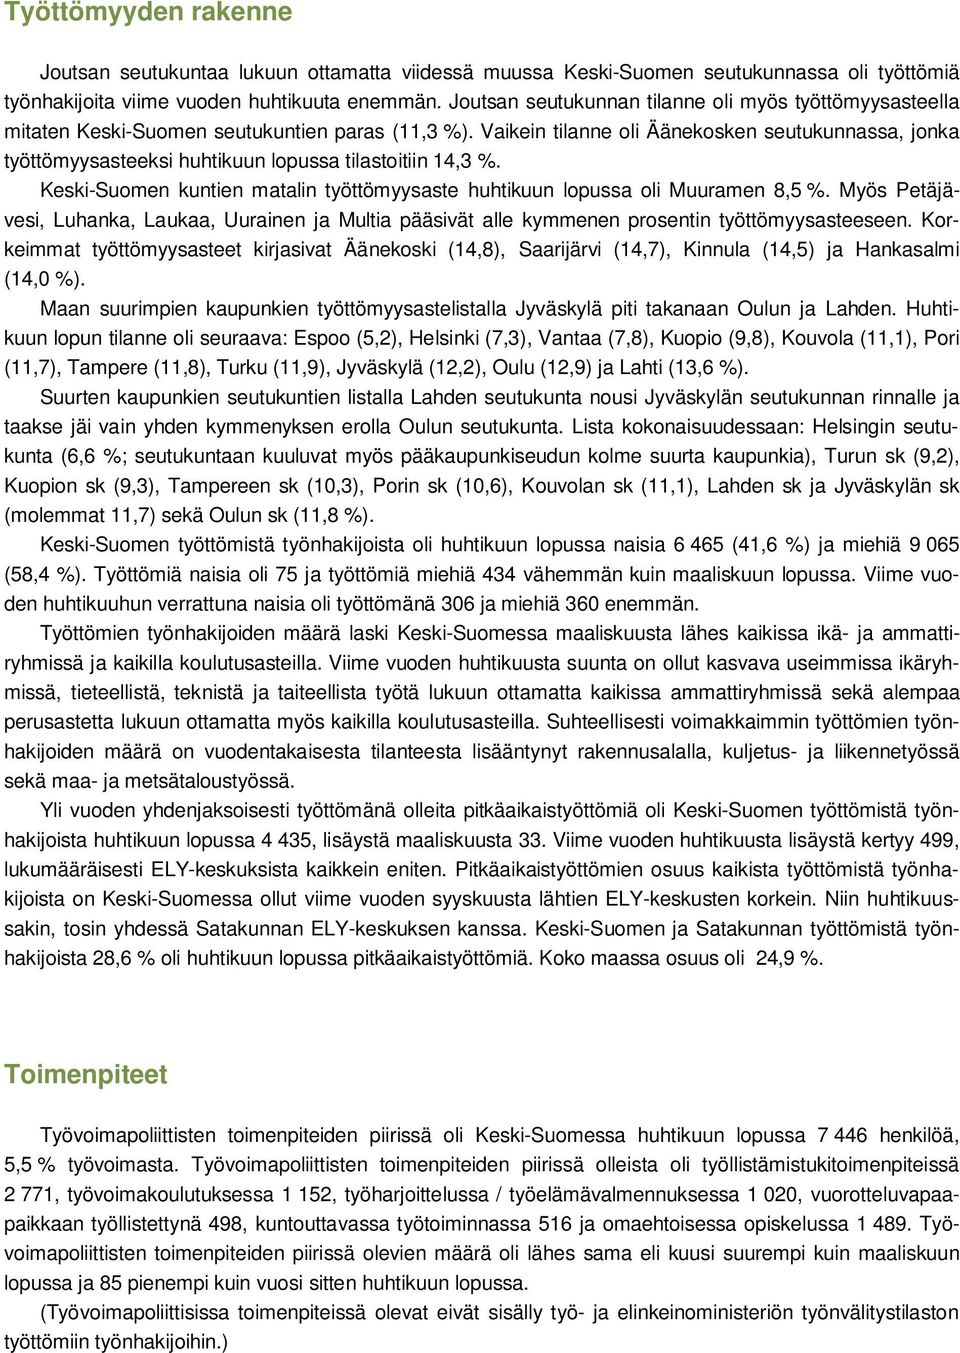 Vaikein tilanne oli Äänekosken seutukunnassa, jonka työttömyysasteeksi huhtikuun lopussa tilastoitiin 14,3 %. Keski-Suomen kuntien matalin työttömyysaste huhtikuun lopussa oli Muuramen 8,5 %.